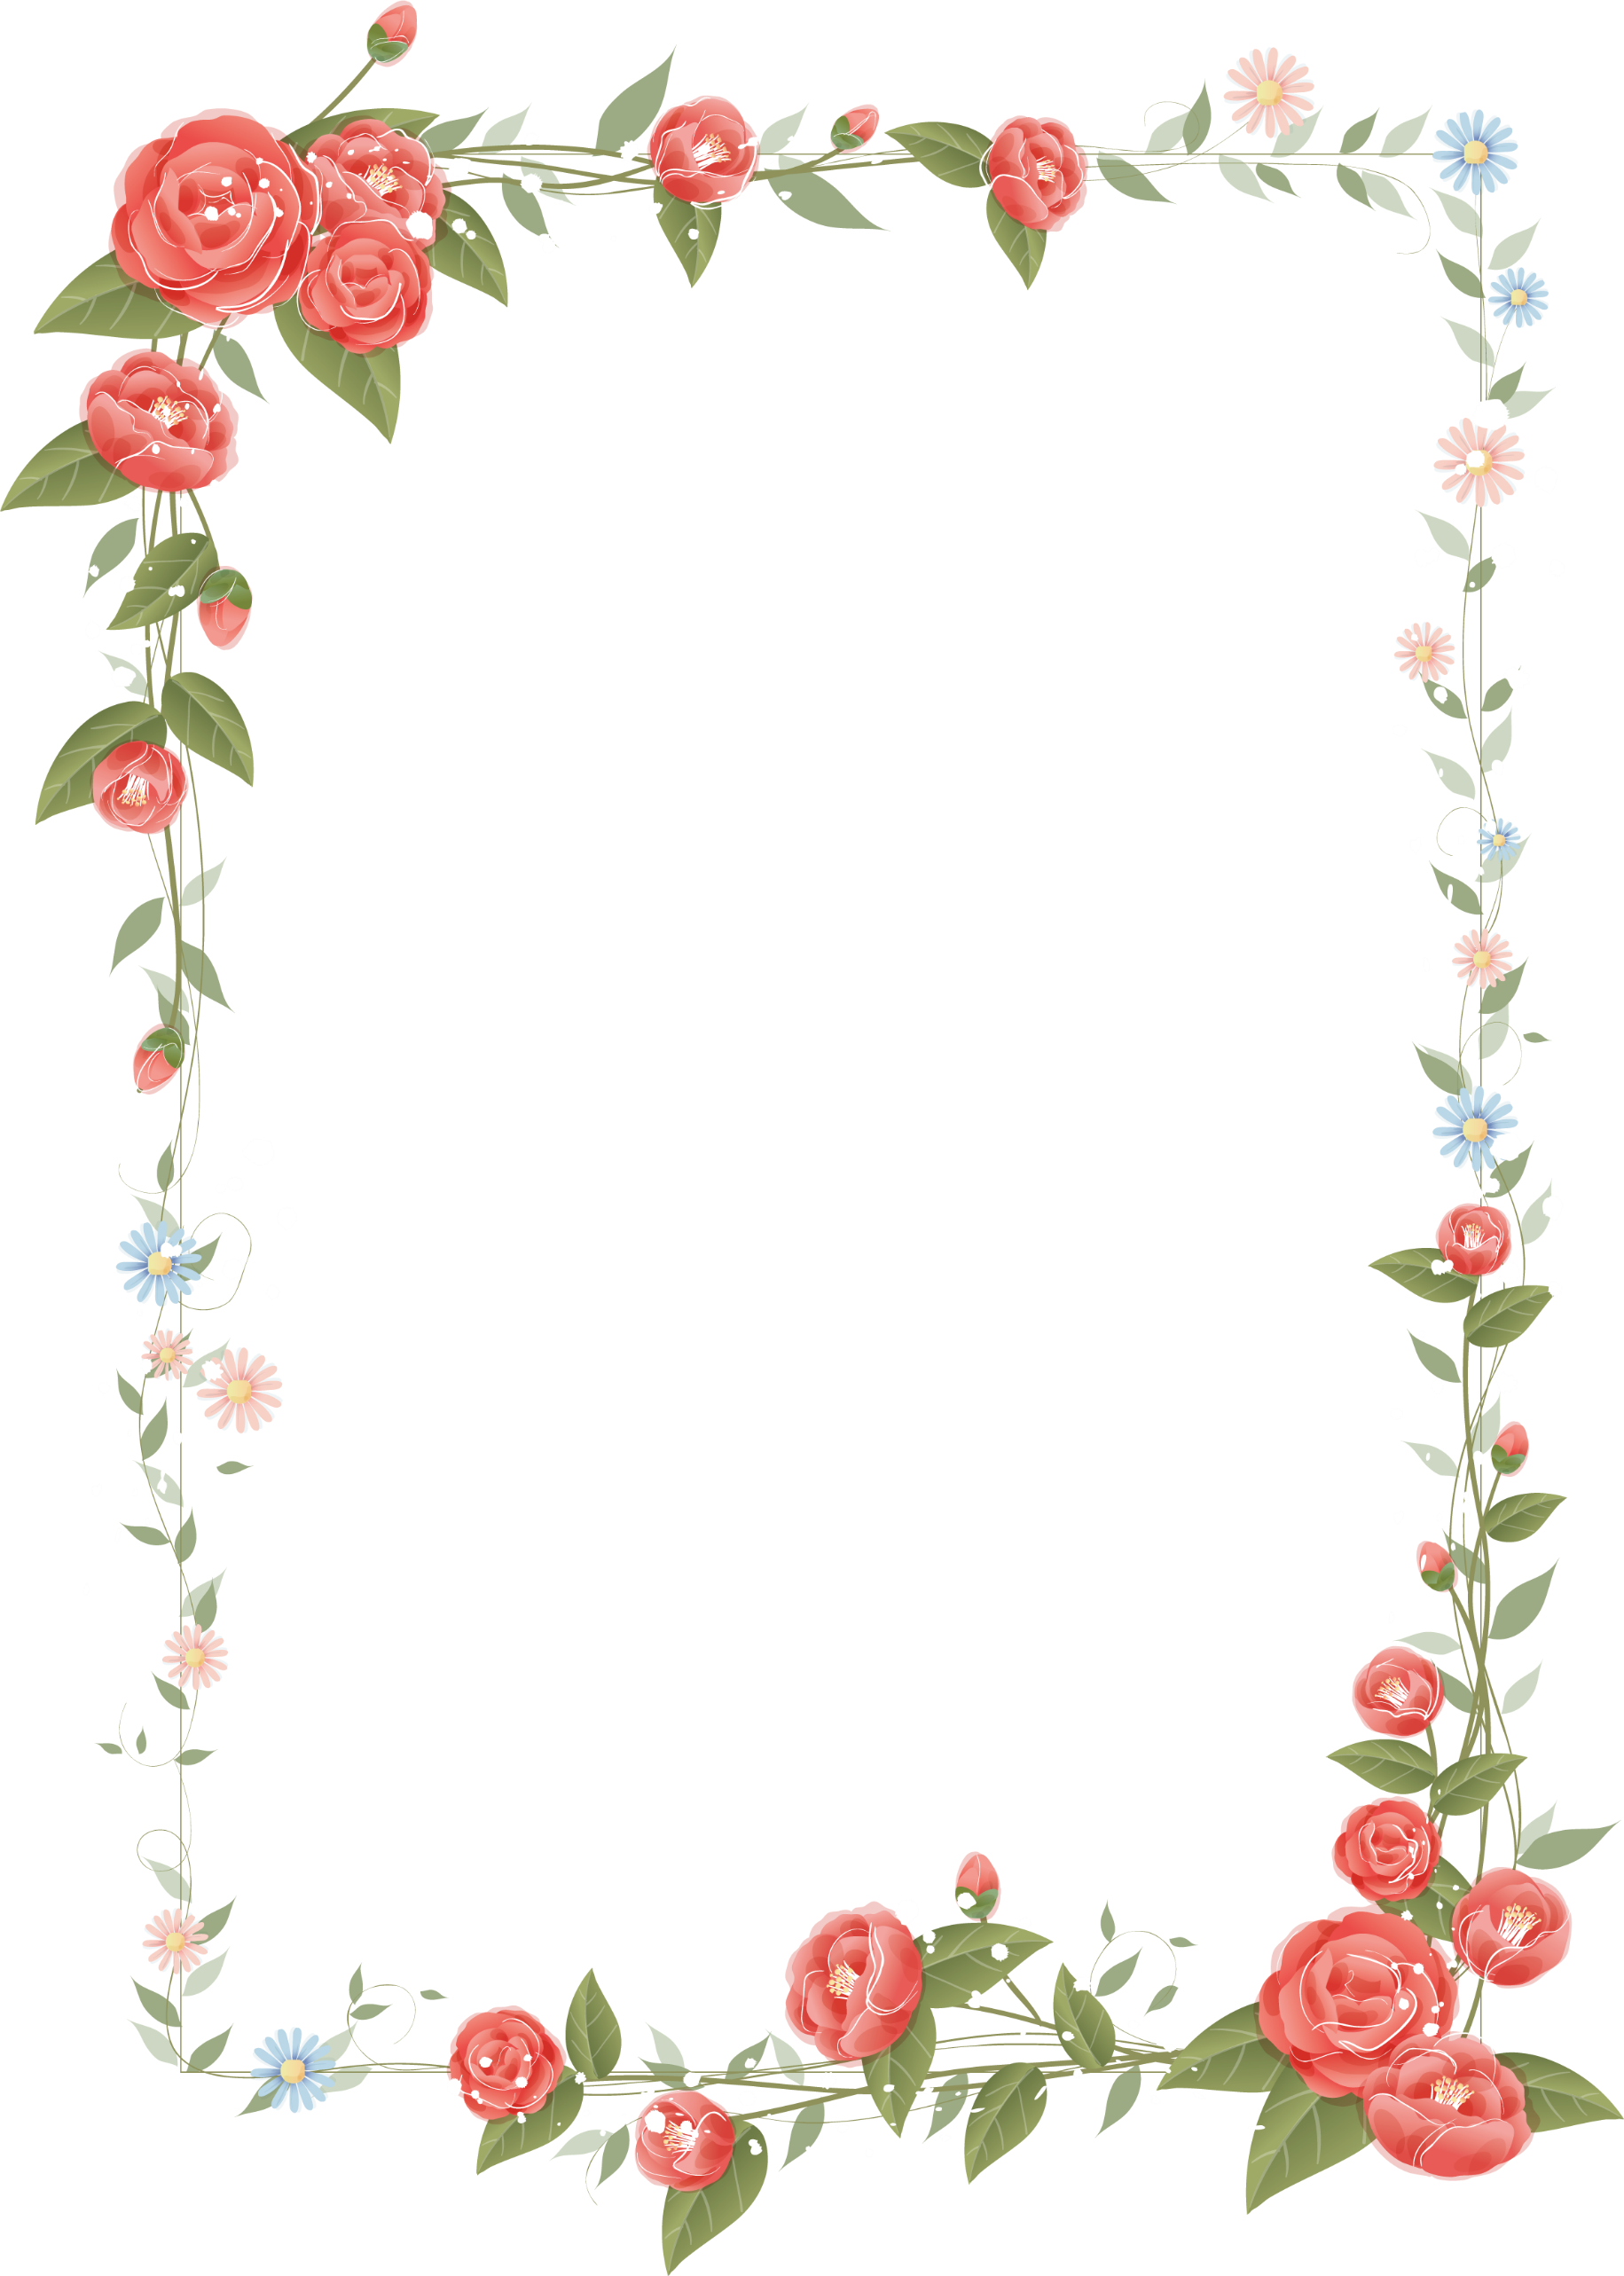 Rose Frame Design Floral Flowers Border Clipart